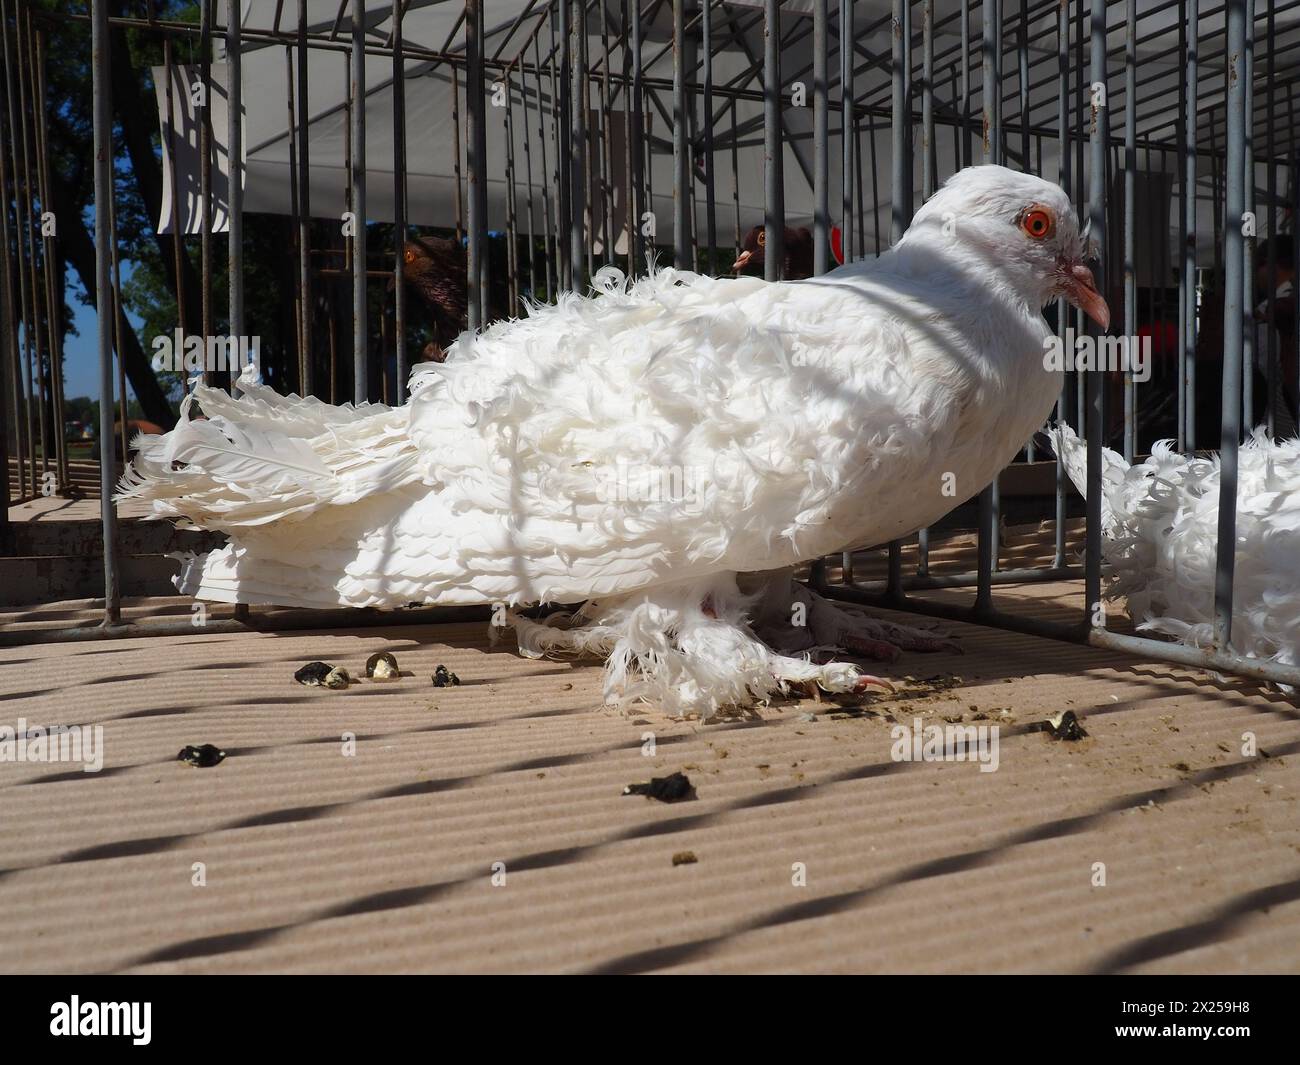 Ungarische Lockentaube. Weißer Vogel der Taubenfamilie in einem ausgestellten Käfig. Pelzpfoten, Schwanz und lockige Federn auf den Flügeln. Das Ergebnis der Selektio Stockfoto